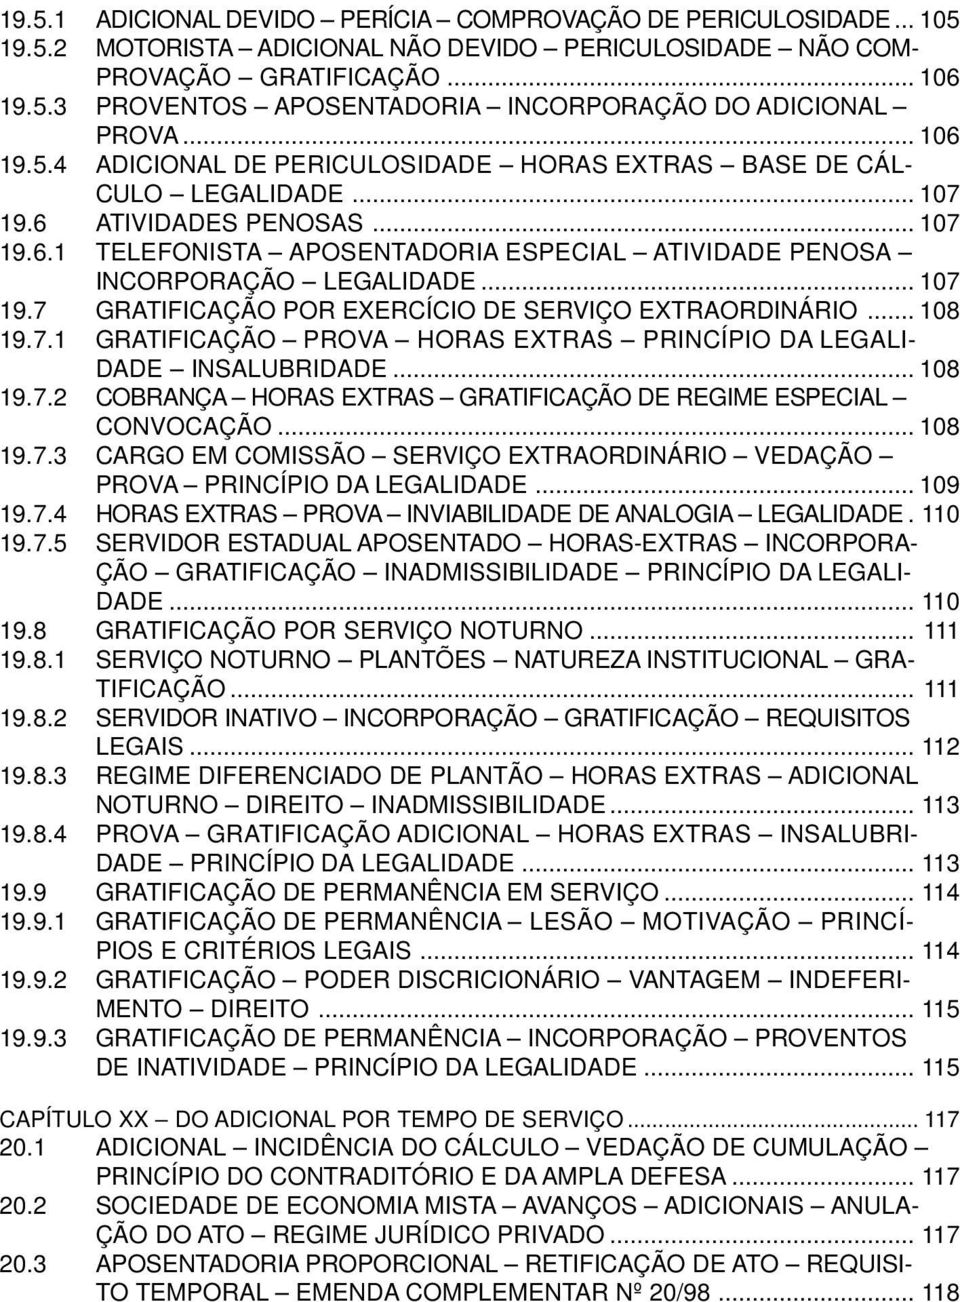 .. 107 19.7 GRATIFICAÇÃO POR EXERCÍCIO DE SERVIÇO EXTRAORDINÁRIO... 108 19.7.1 GRATIFICAÇÃO PROVA HORAS EXTRAS PRINCÍPIO DA LEGALI- DADE INSALUBRIDADE... 108 19.7.2 COBRANÇA HORAS EXTRAS GRATIFICAÇÃO DE REGIME ESPECIAL CONVOCAÇÃO.